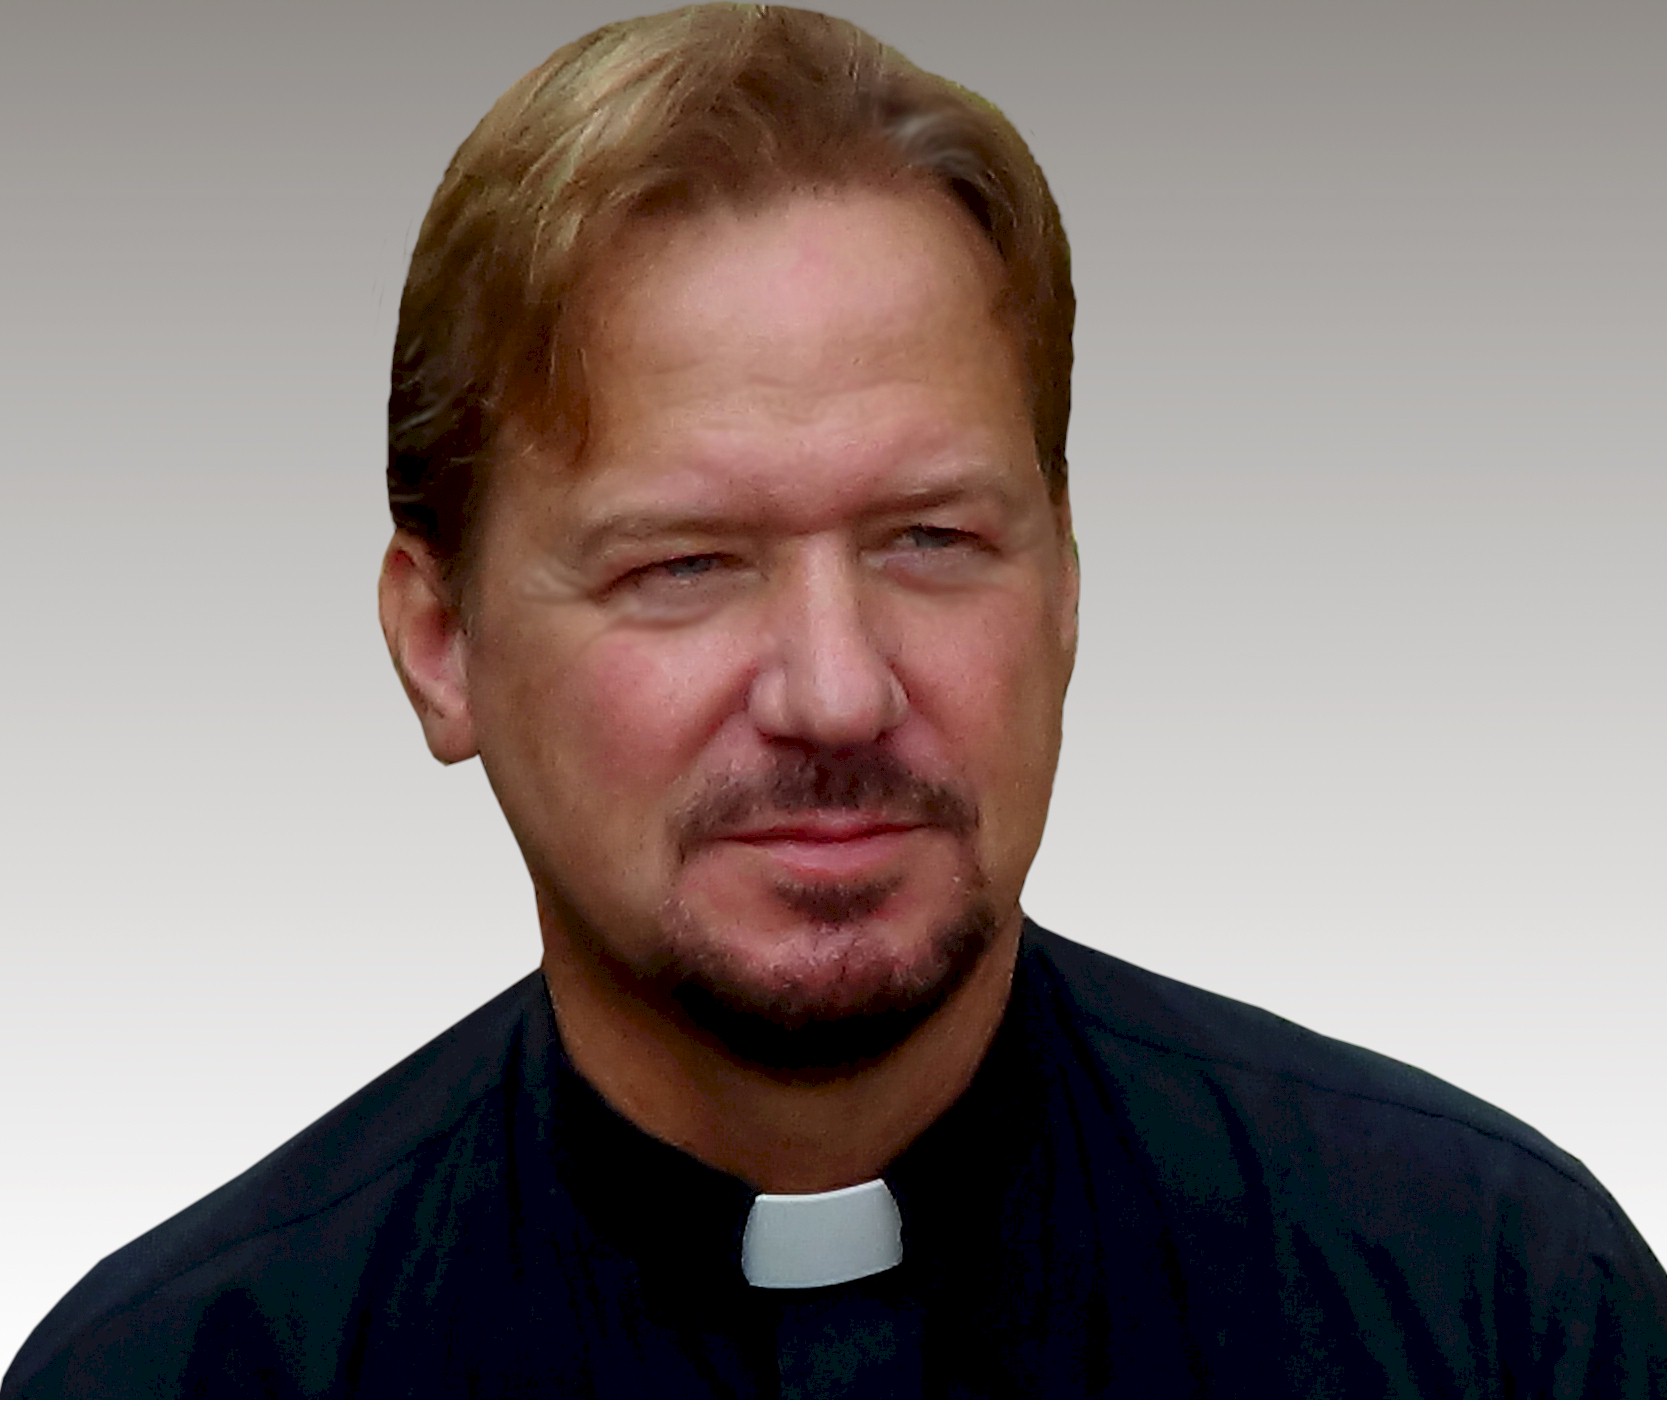 Rev. Frank Schaefer, Lebanon PA, 2013